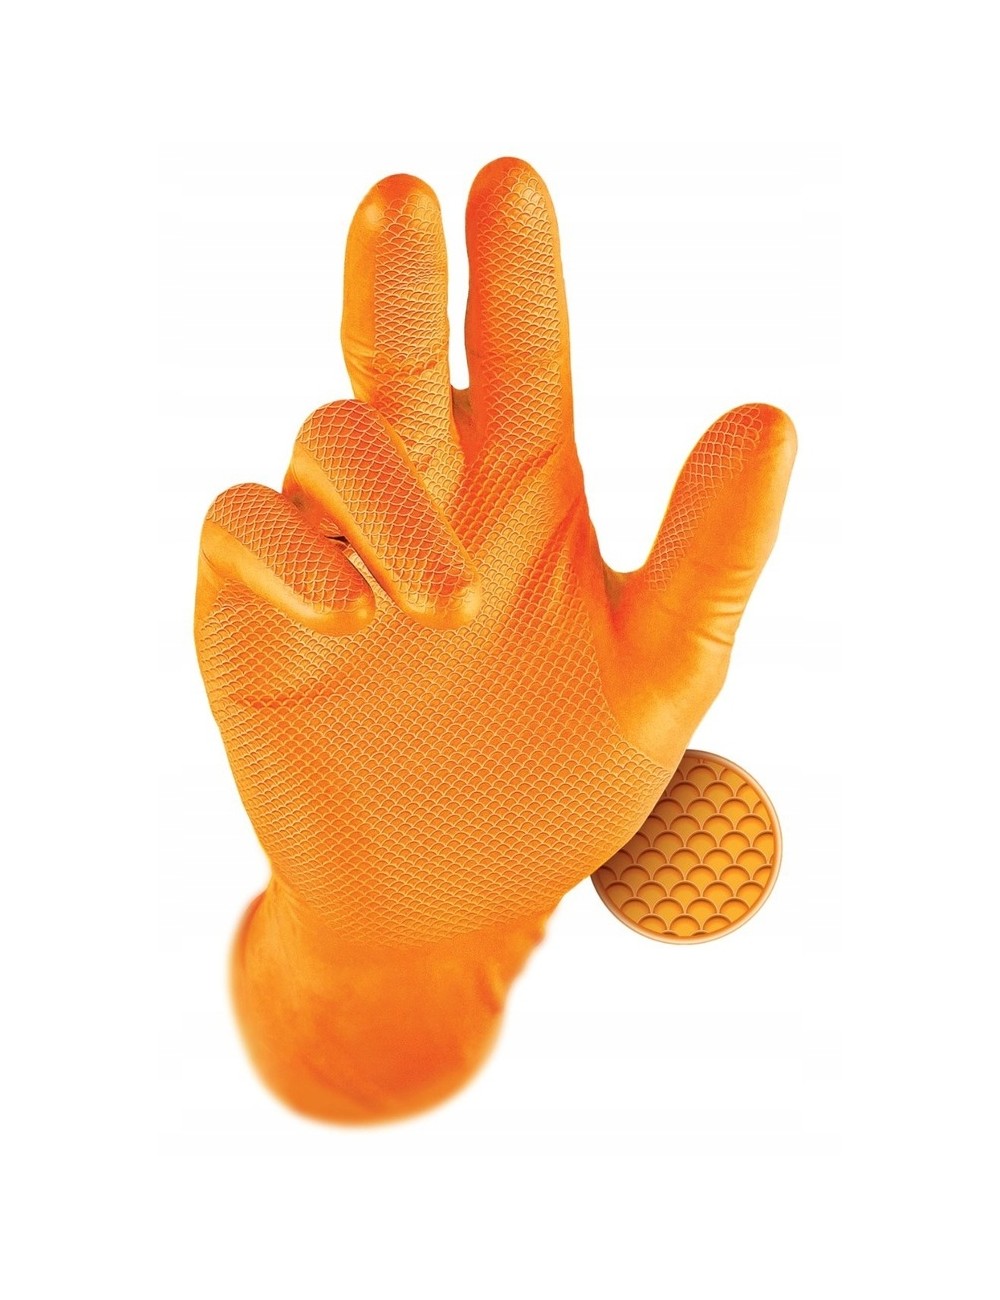 Grippaz 246 nitrile gloves 4 pairs